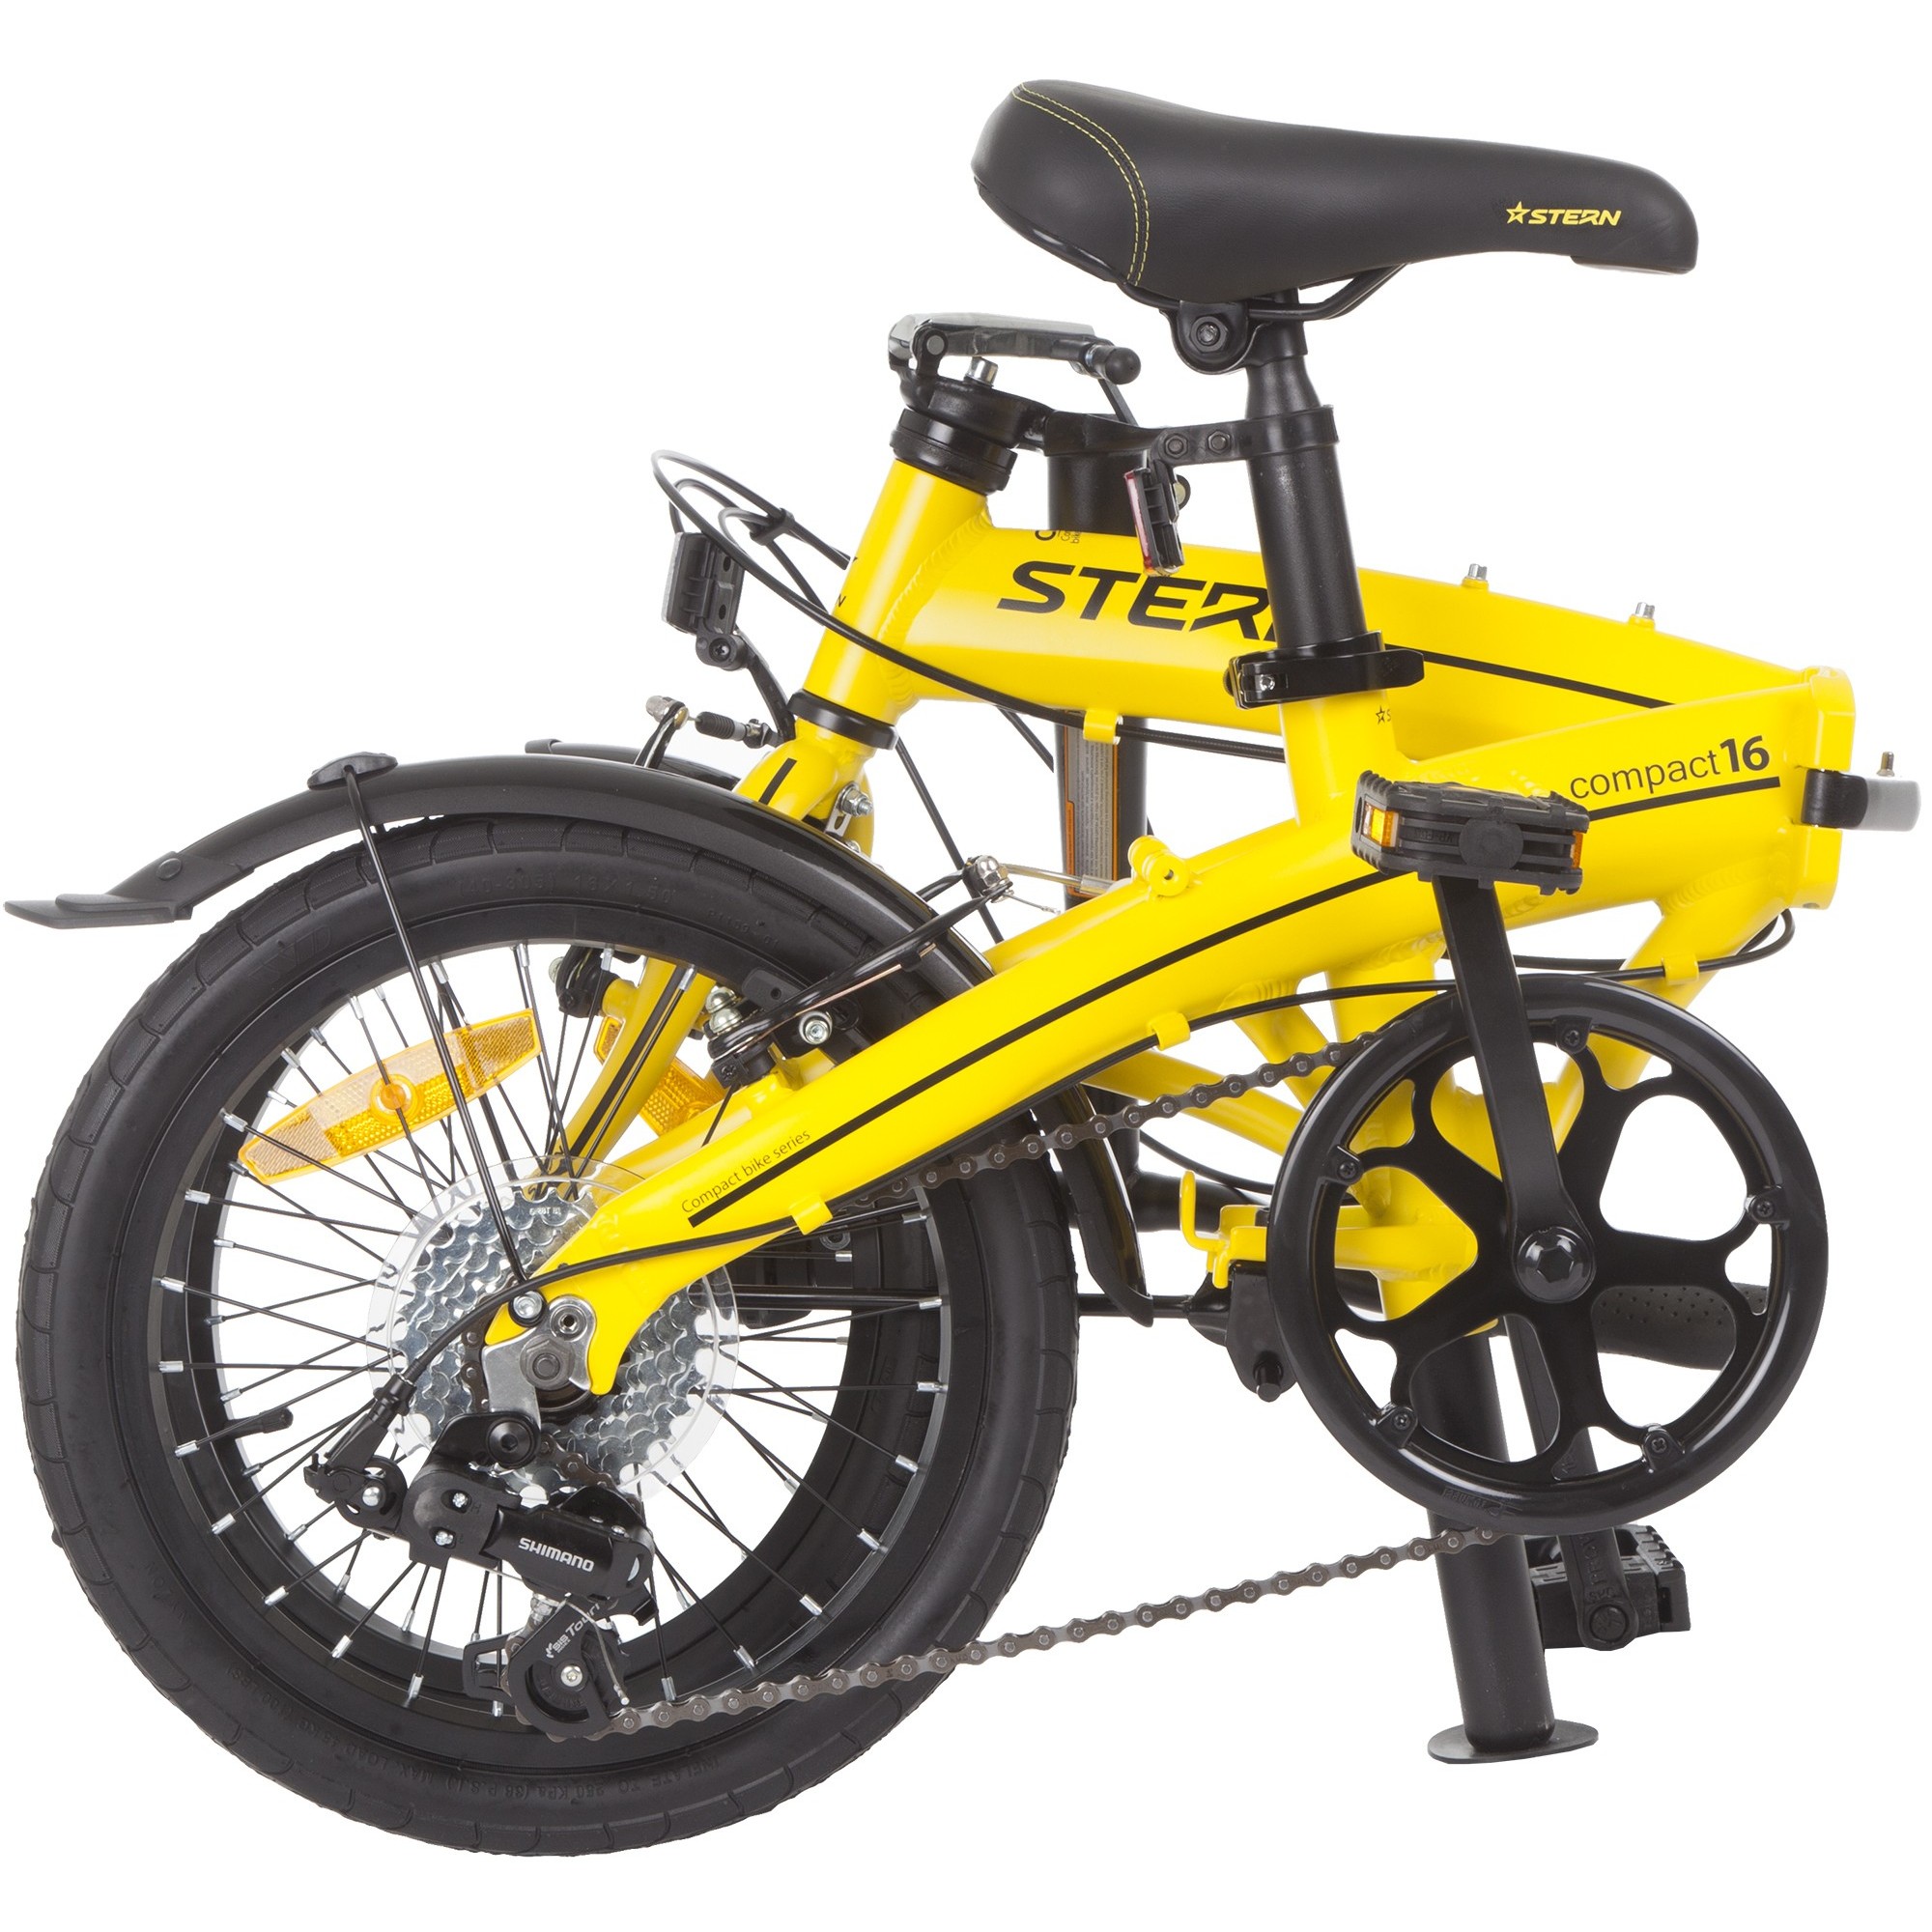 Компакт 16. Велосипед Штерн складной жёлтый.